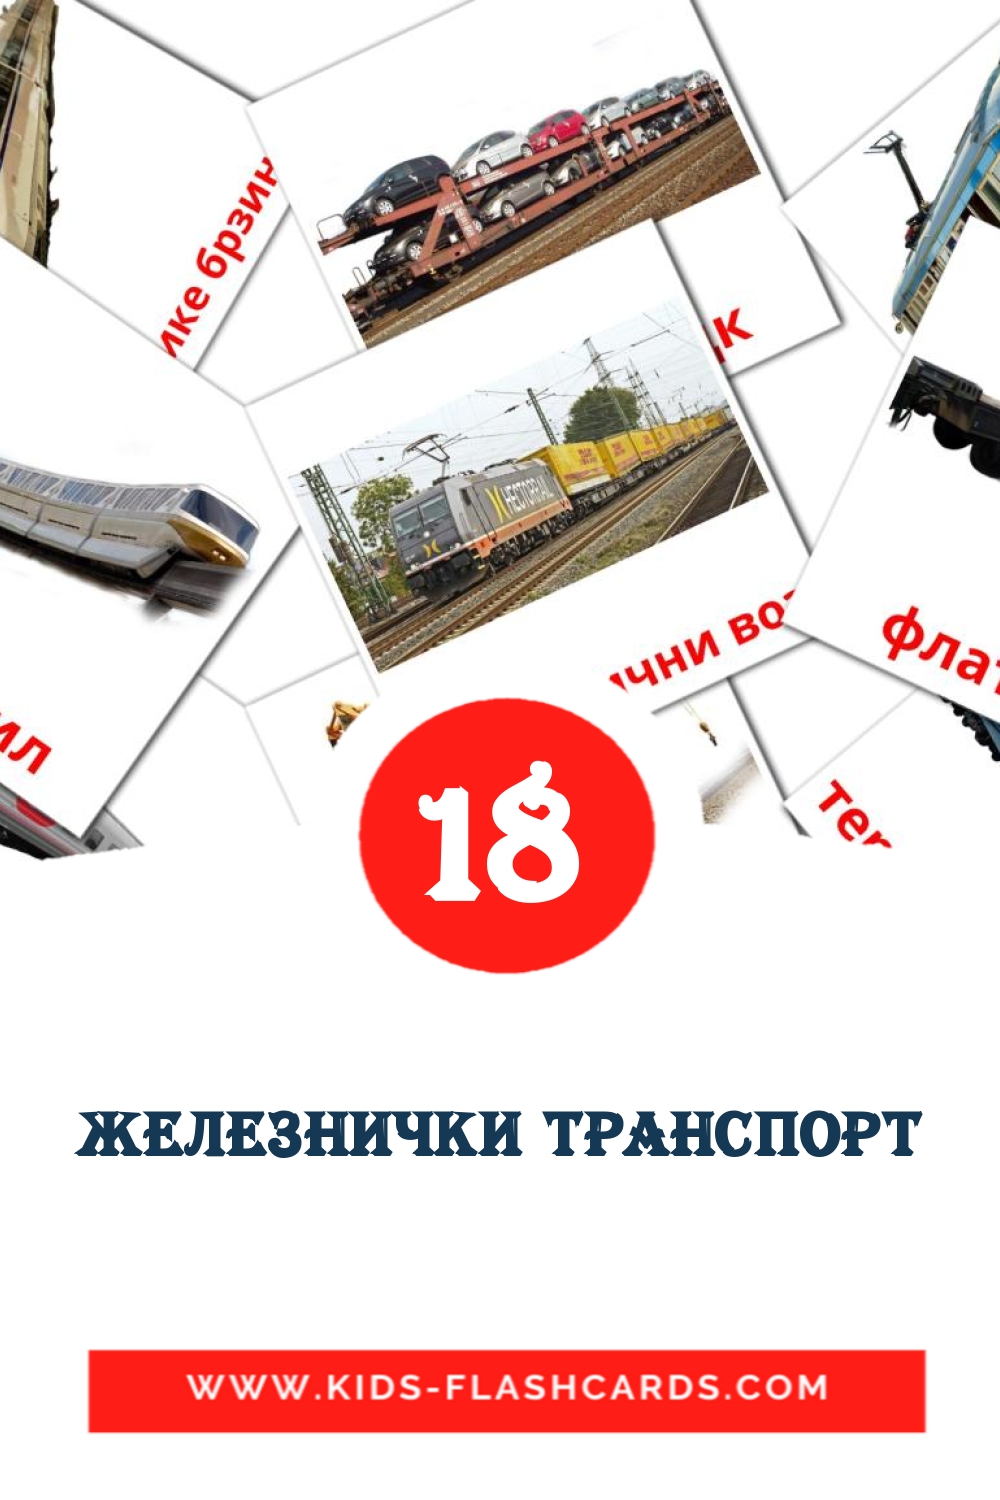 18 Железнички транспорт Bildkarten für den Kindergarten auf Serbisch(kyrillisch)